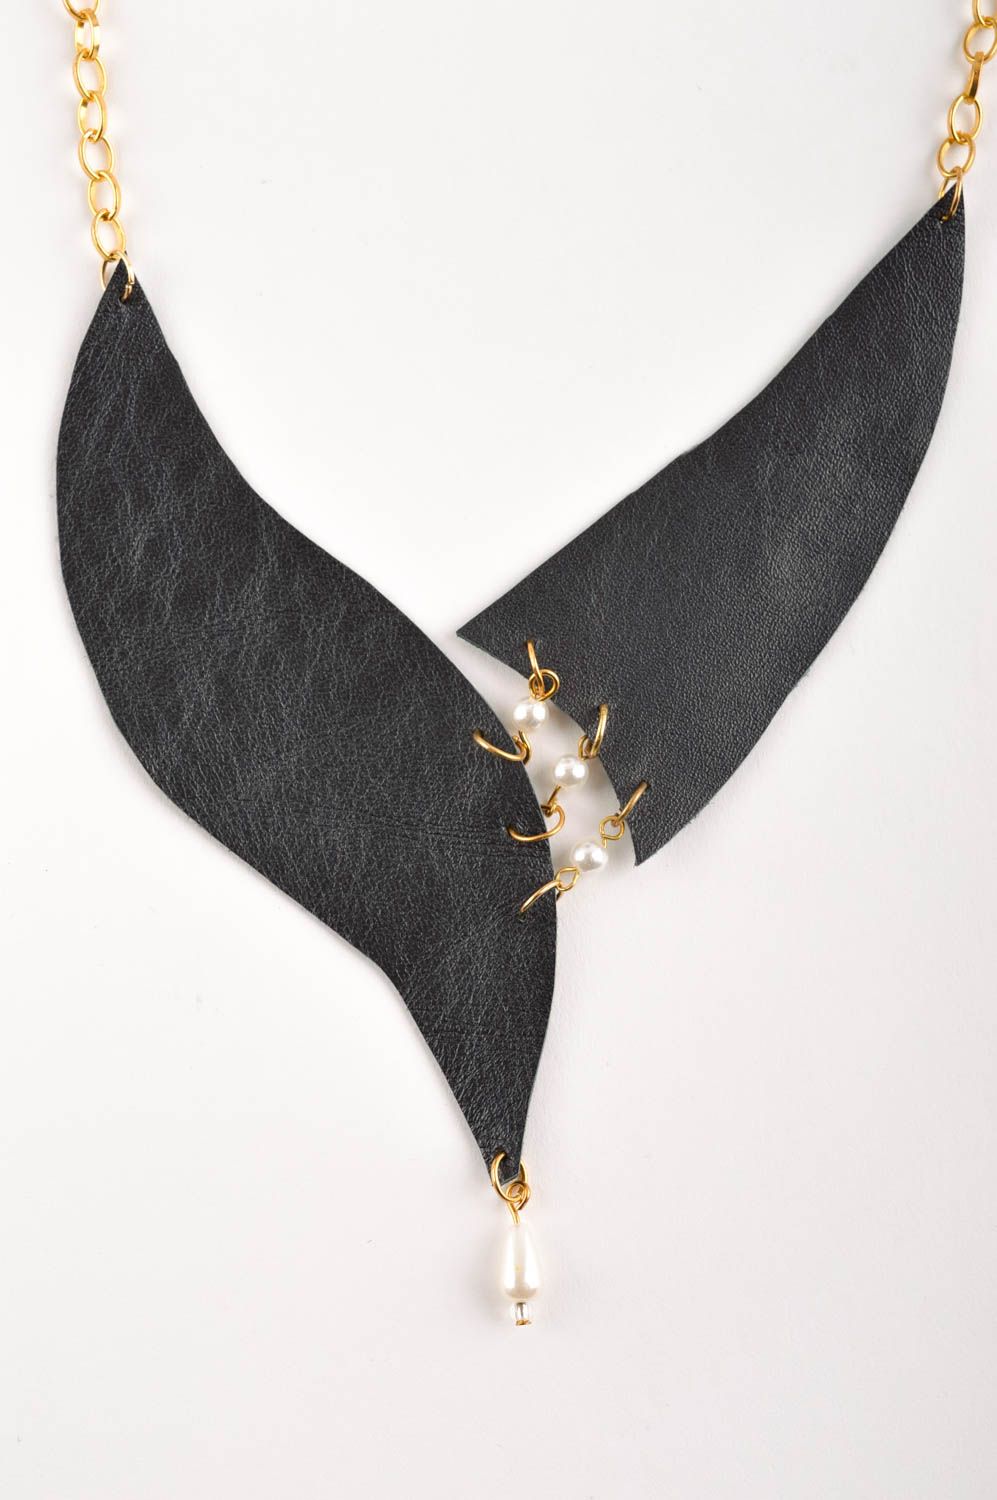 Collier en cuir noir Bijou fait main avec perles Cadeau femme original photo 3